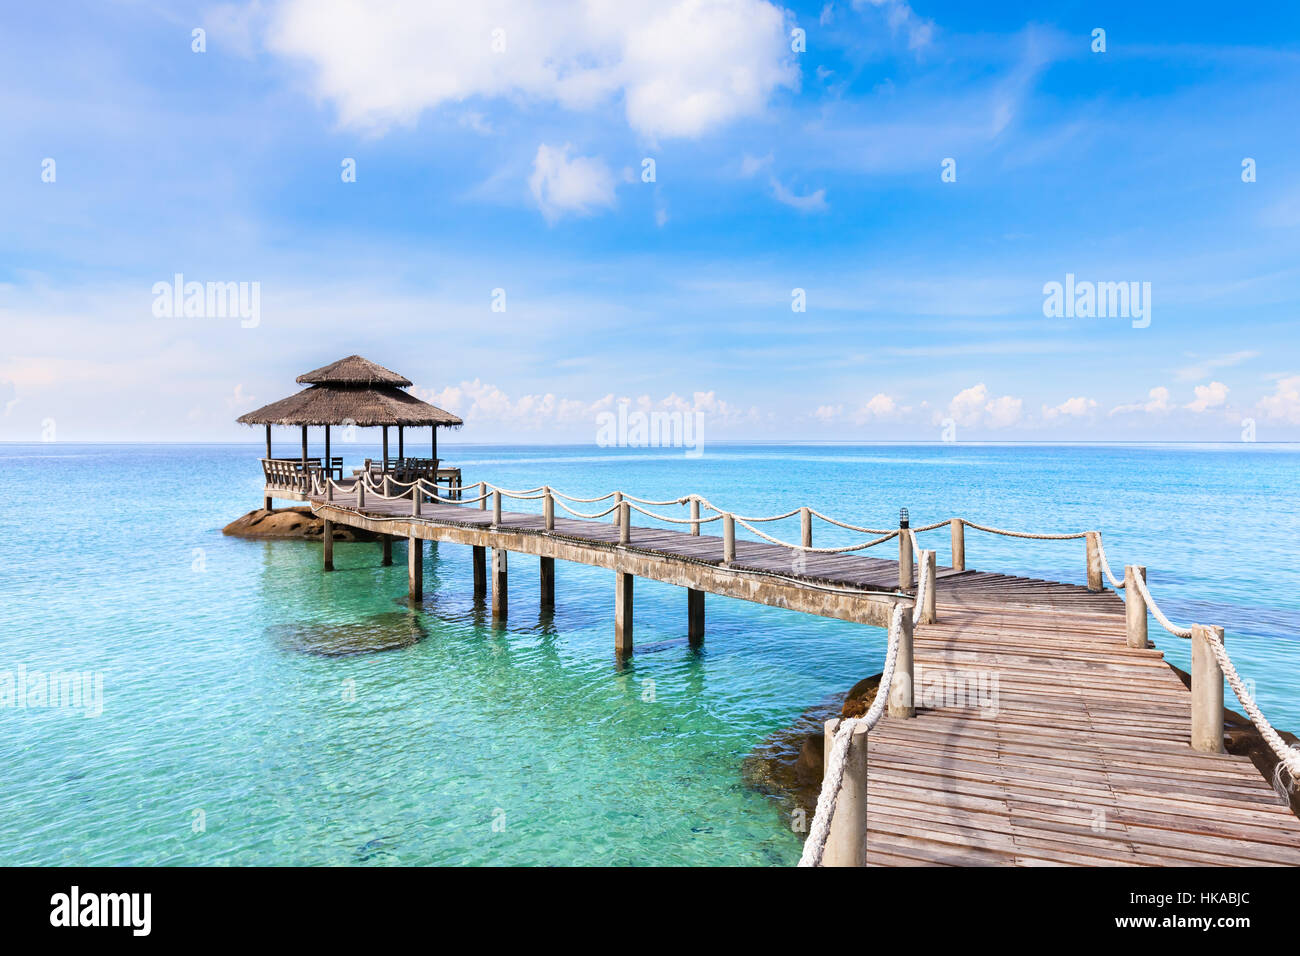 Tropischer Strand Landschaft mit einem Holzsteg oder Steg mit Hütte oberhalb transparent türkis klare Meer Wasser und blau sonnige Himmel, schönen Urlaub desti Stockfoto